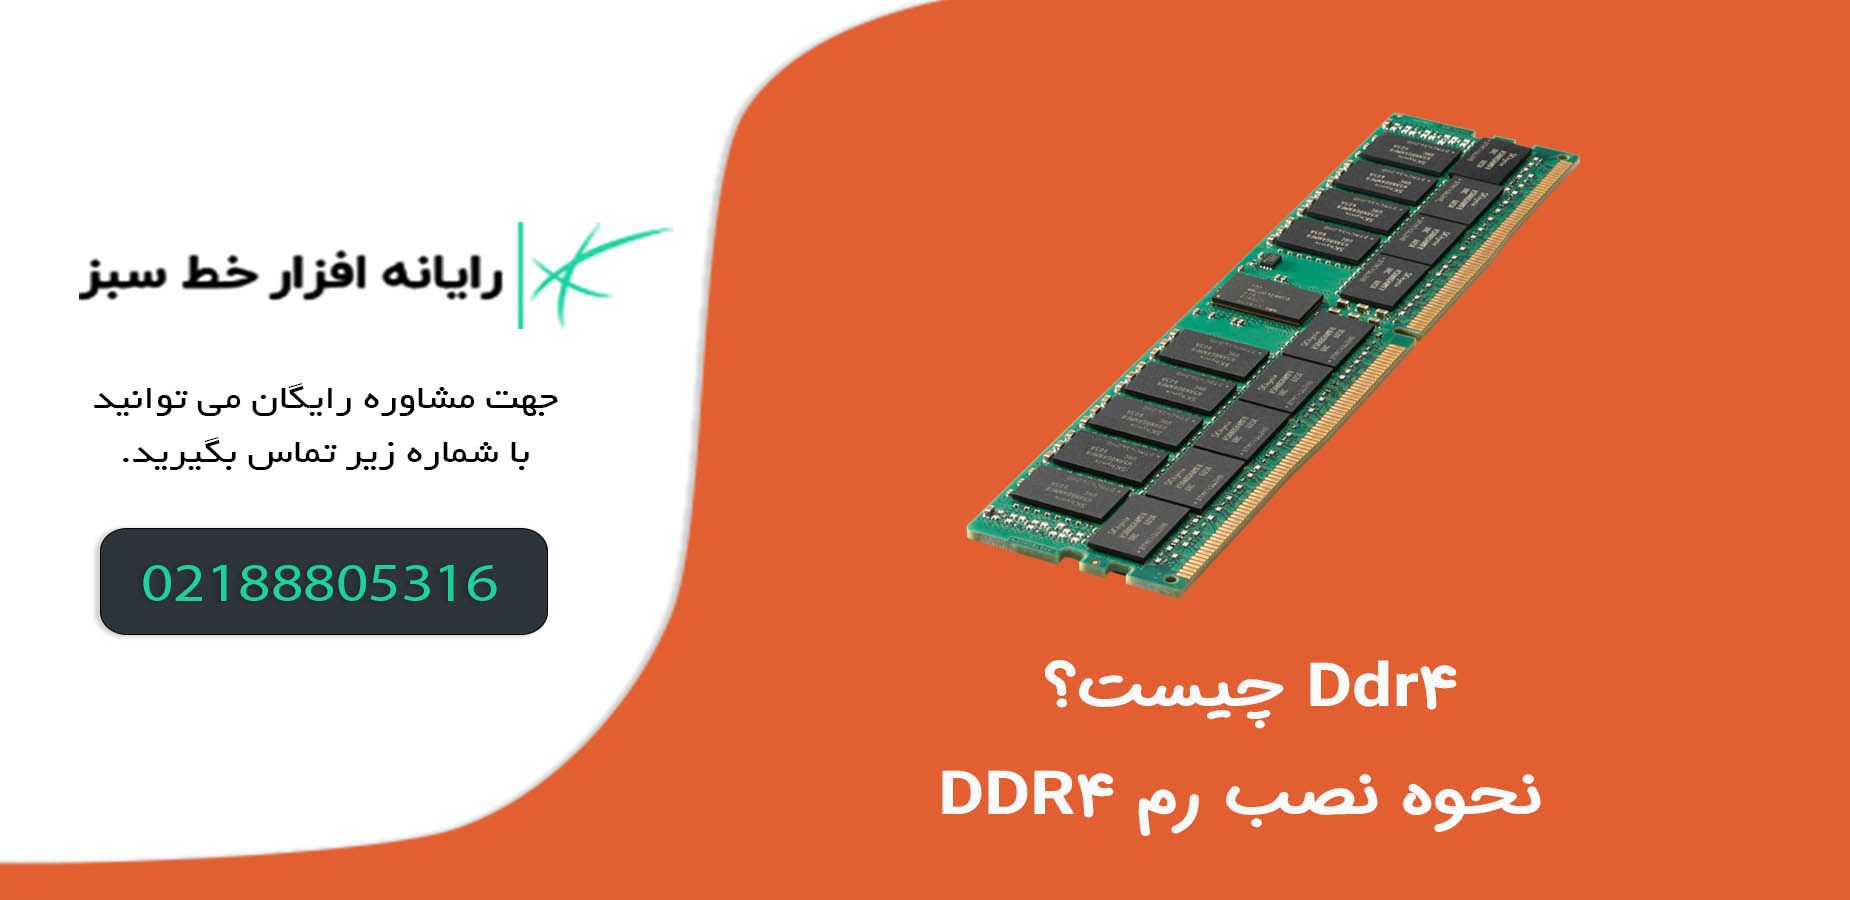 Ddr4 چیست؟ نحوه نصب رم DDR4